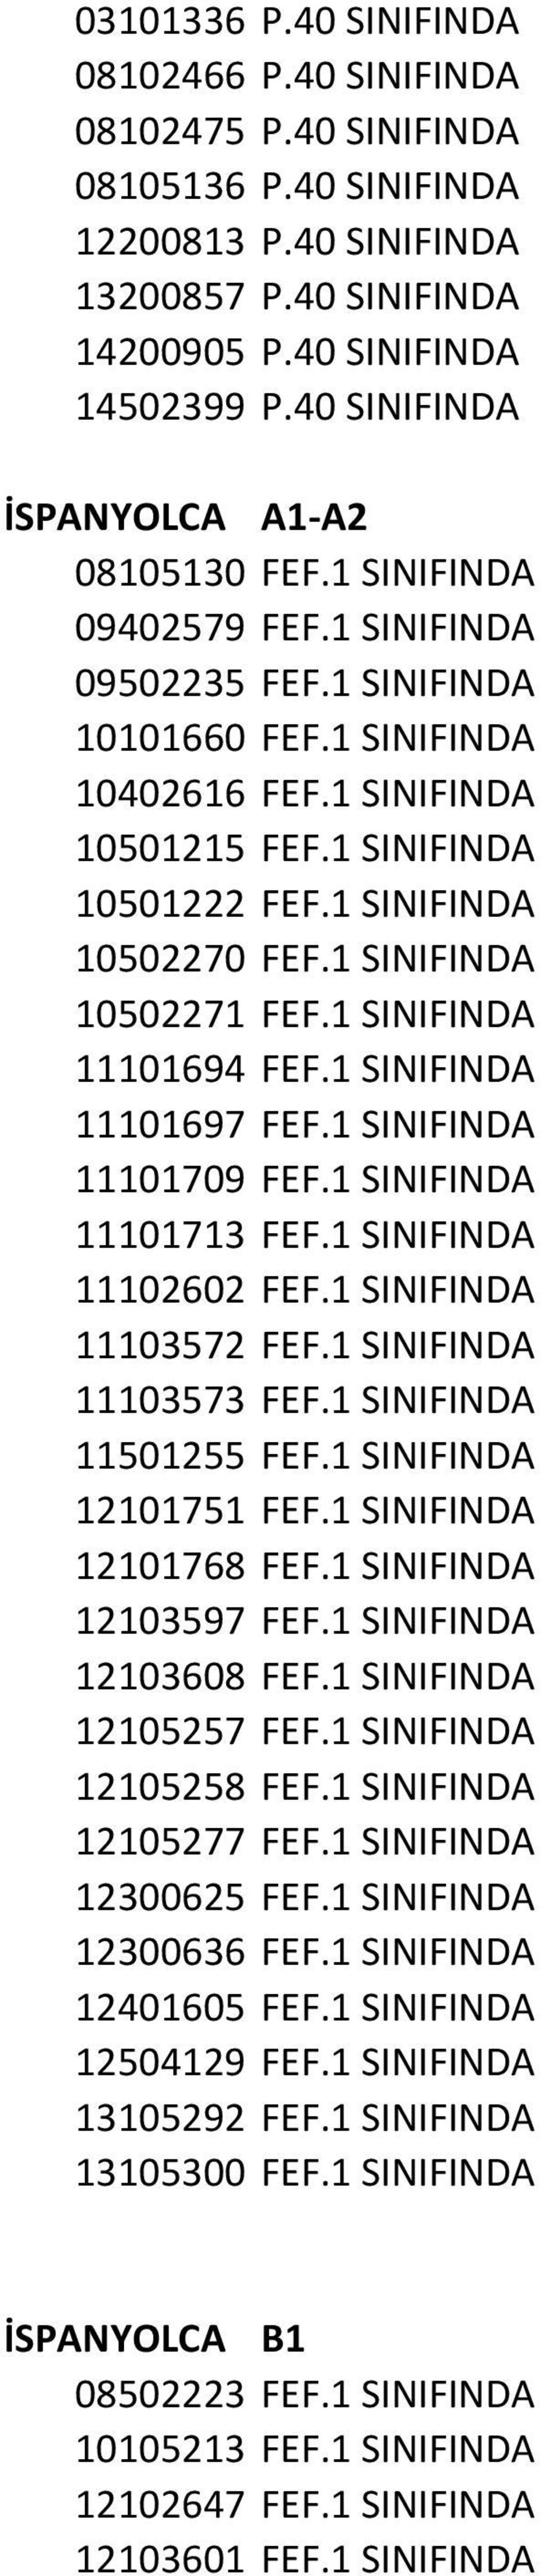 1 SINIFINDA 10502270 FEF.1 SINIFINDA 10502271 FEF.1 SINIFINDA 11101694 FEF.1 SINIFINDA 11101697 FEF.1 SINIFINDA 11101709 FEF.1 SINIFINDA 11101713 FEF.1 SINIFINDA 11102602 FEF.1 SINIFINDA 11103572 FEF.